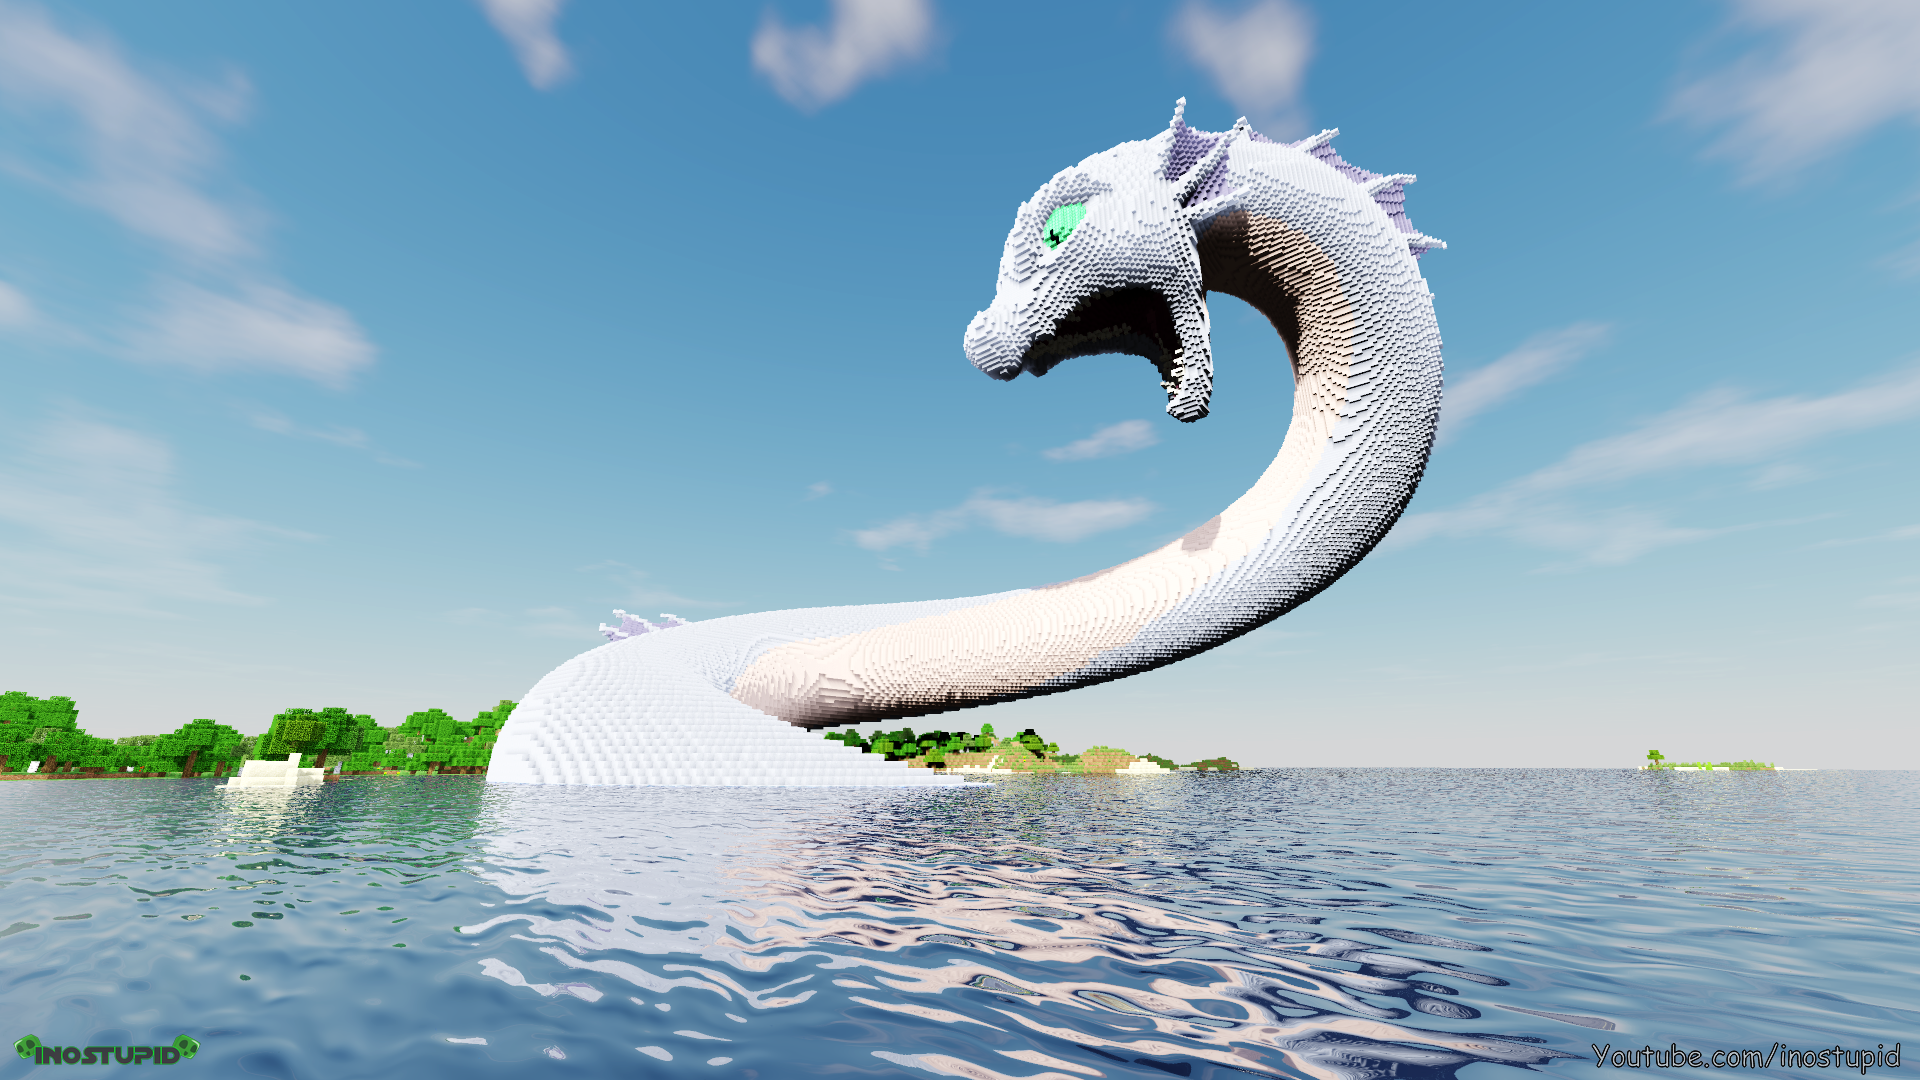 Minecraft Sea Snake Dragon Wallpaper - inostupid by inostupid on DeviantArt